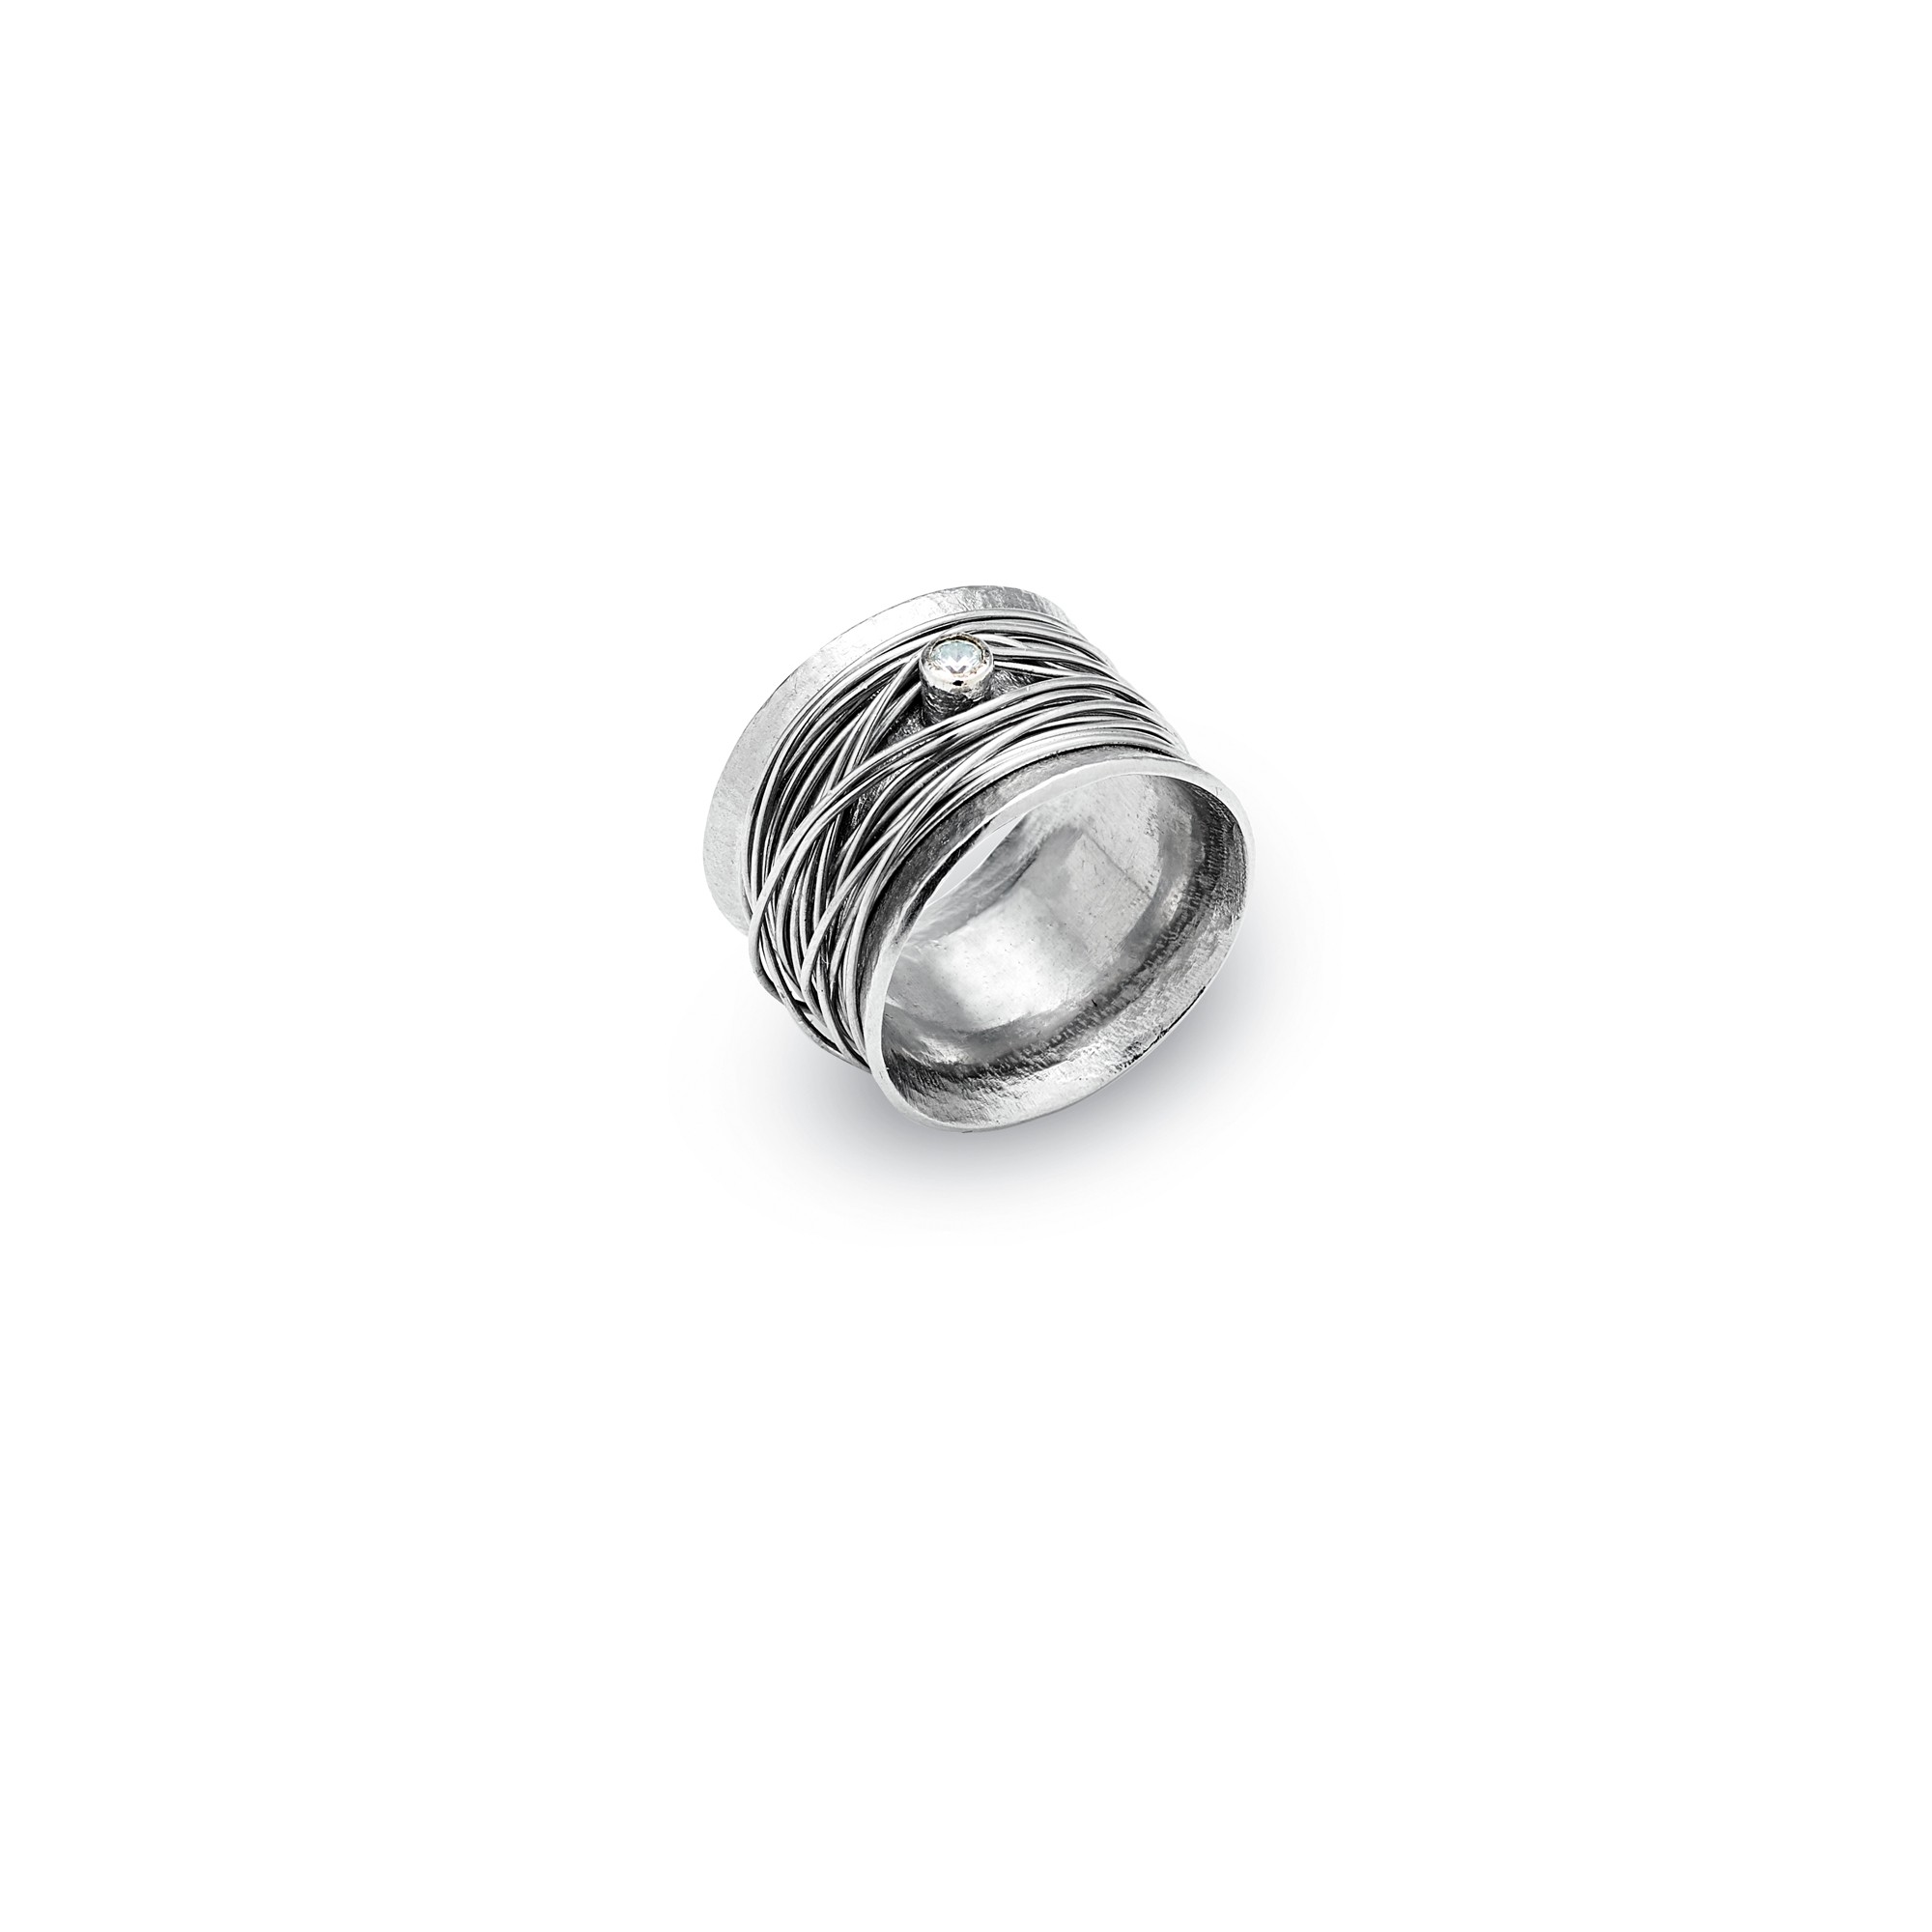 Anel com pedra zircão centro e fios de prata a envolver o anel tipo novelo